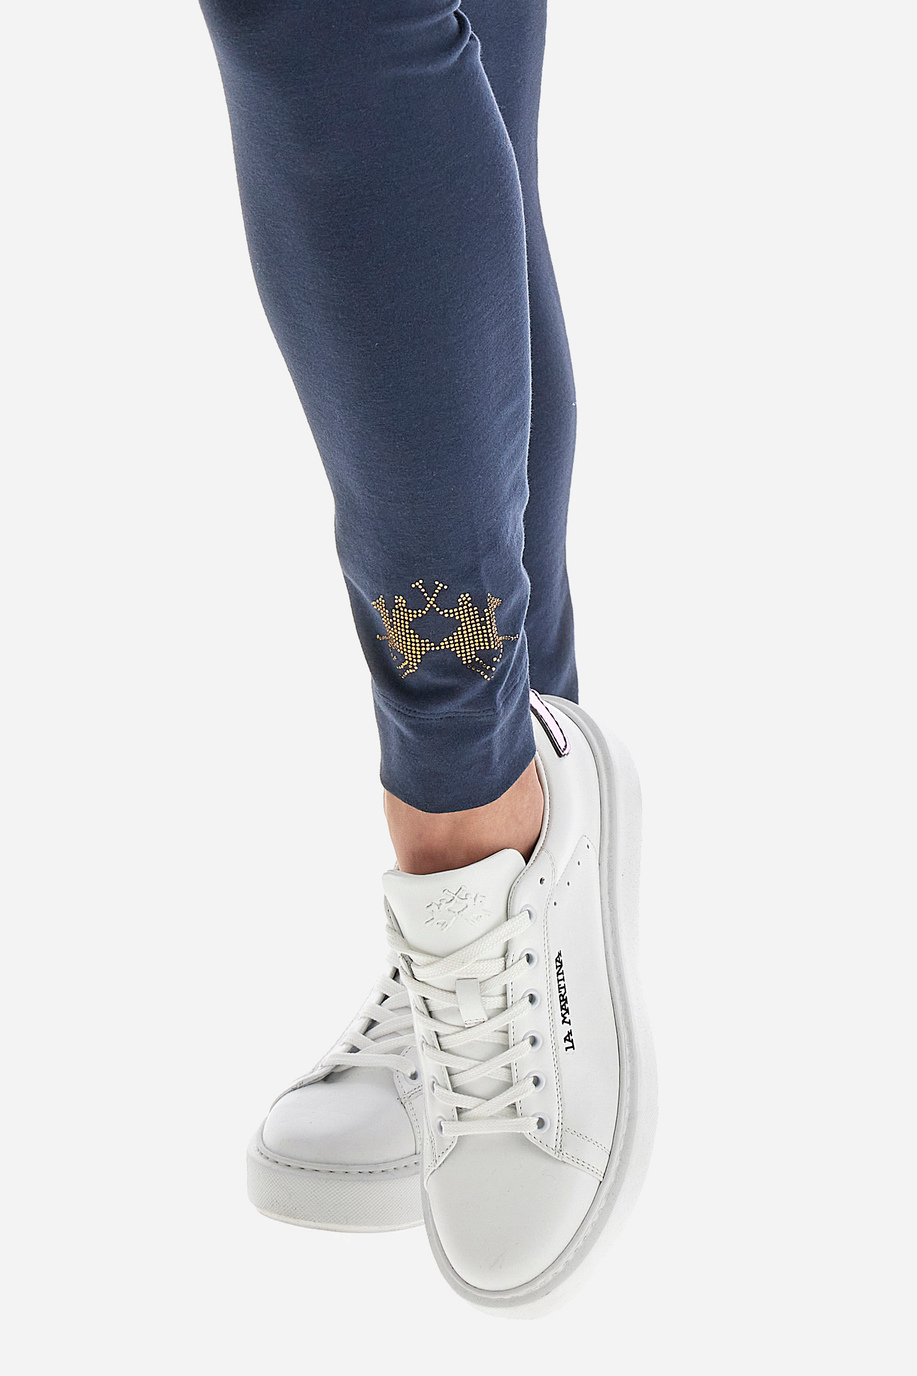 Pantalone leggings donna con logo paillettes Polo Academy tinta unita - Vijay | La Martina - Official Online Shop